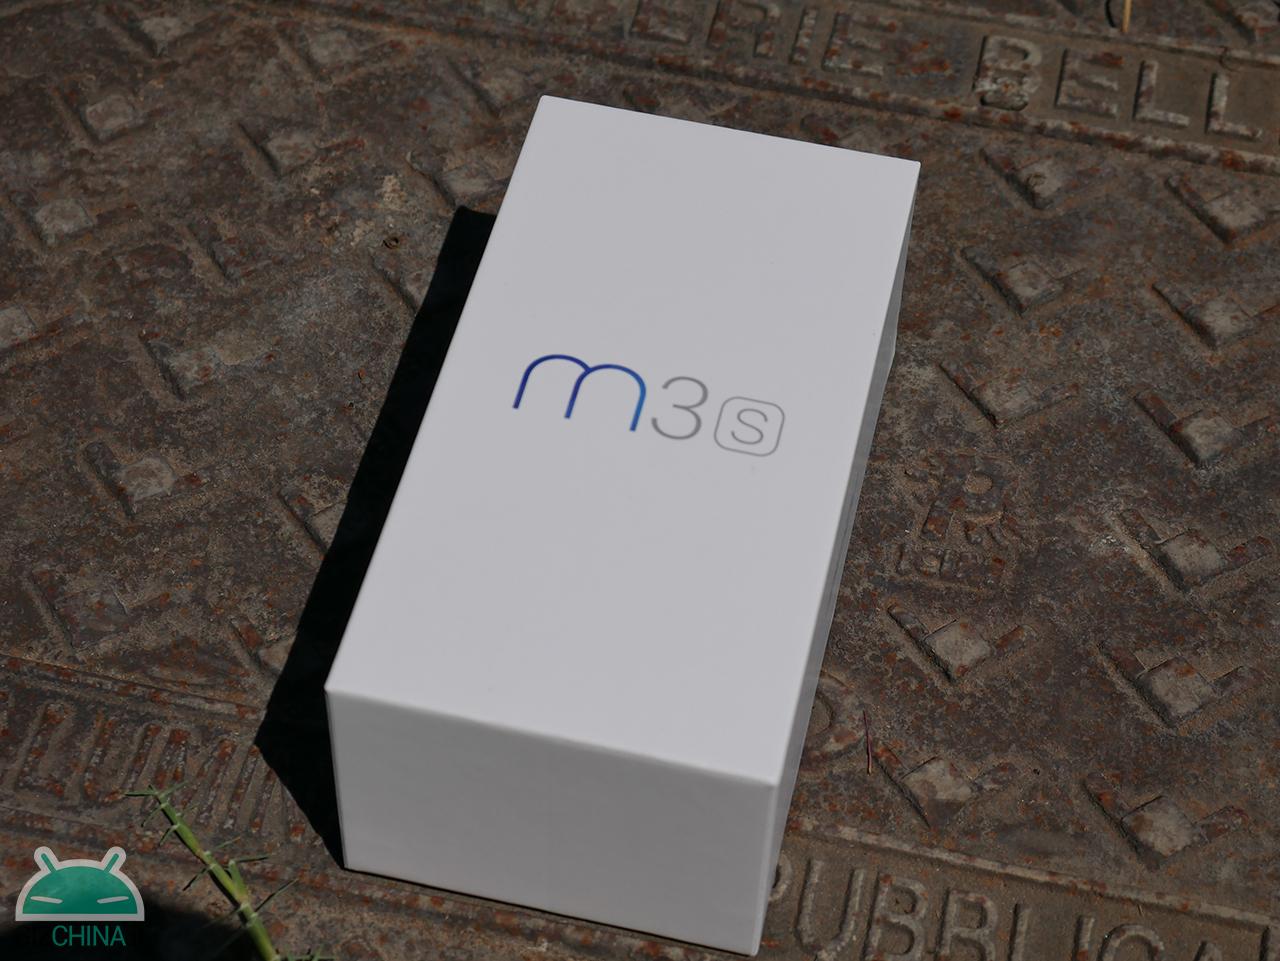 Meizu M3S